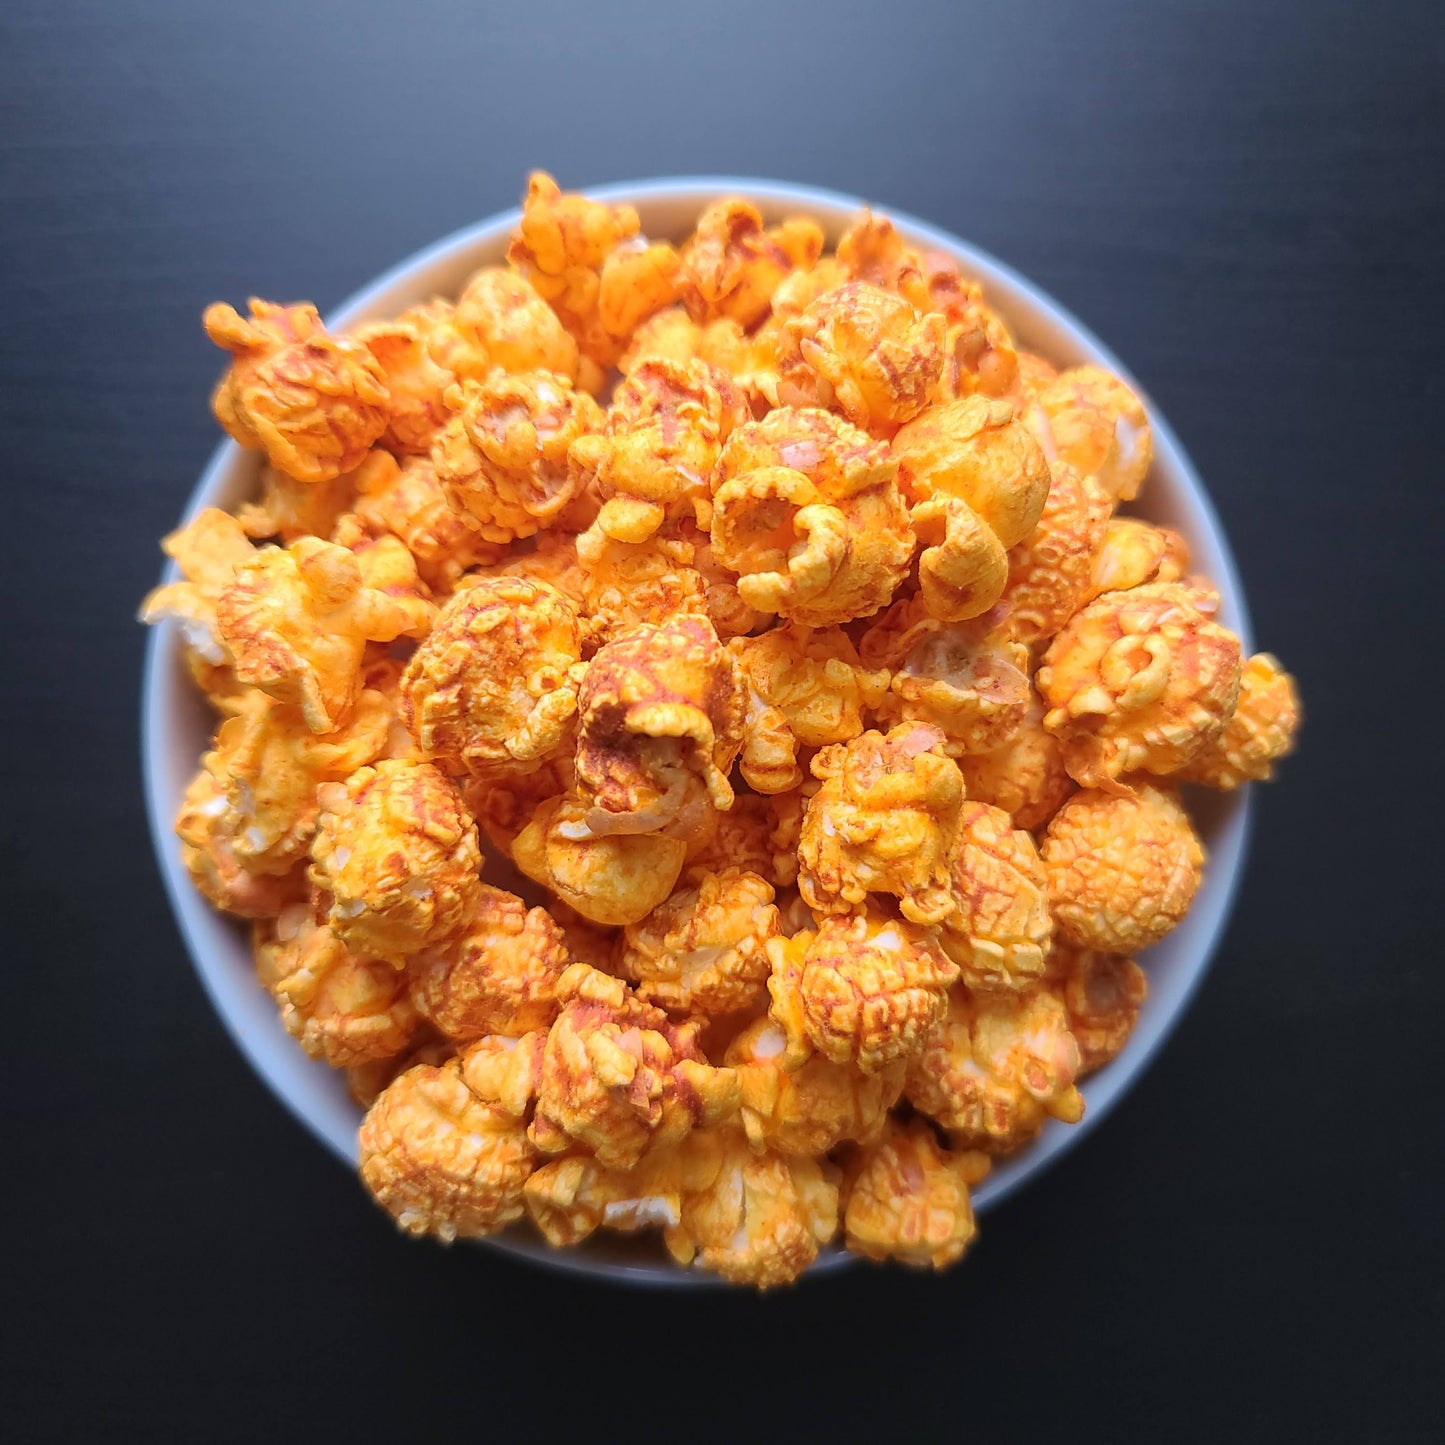 Darryl Evans-Cravings Gourmet Popcorn